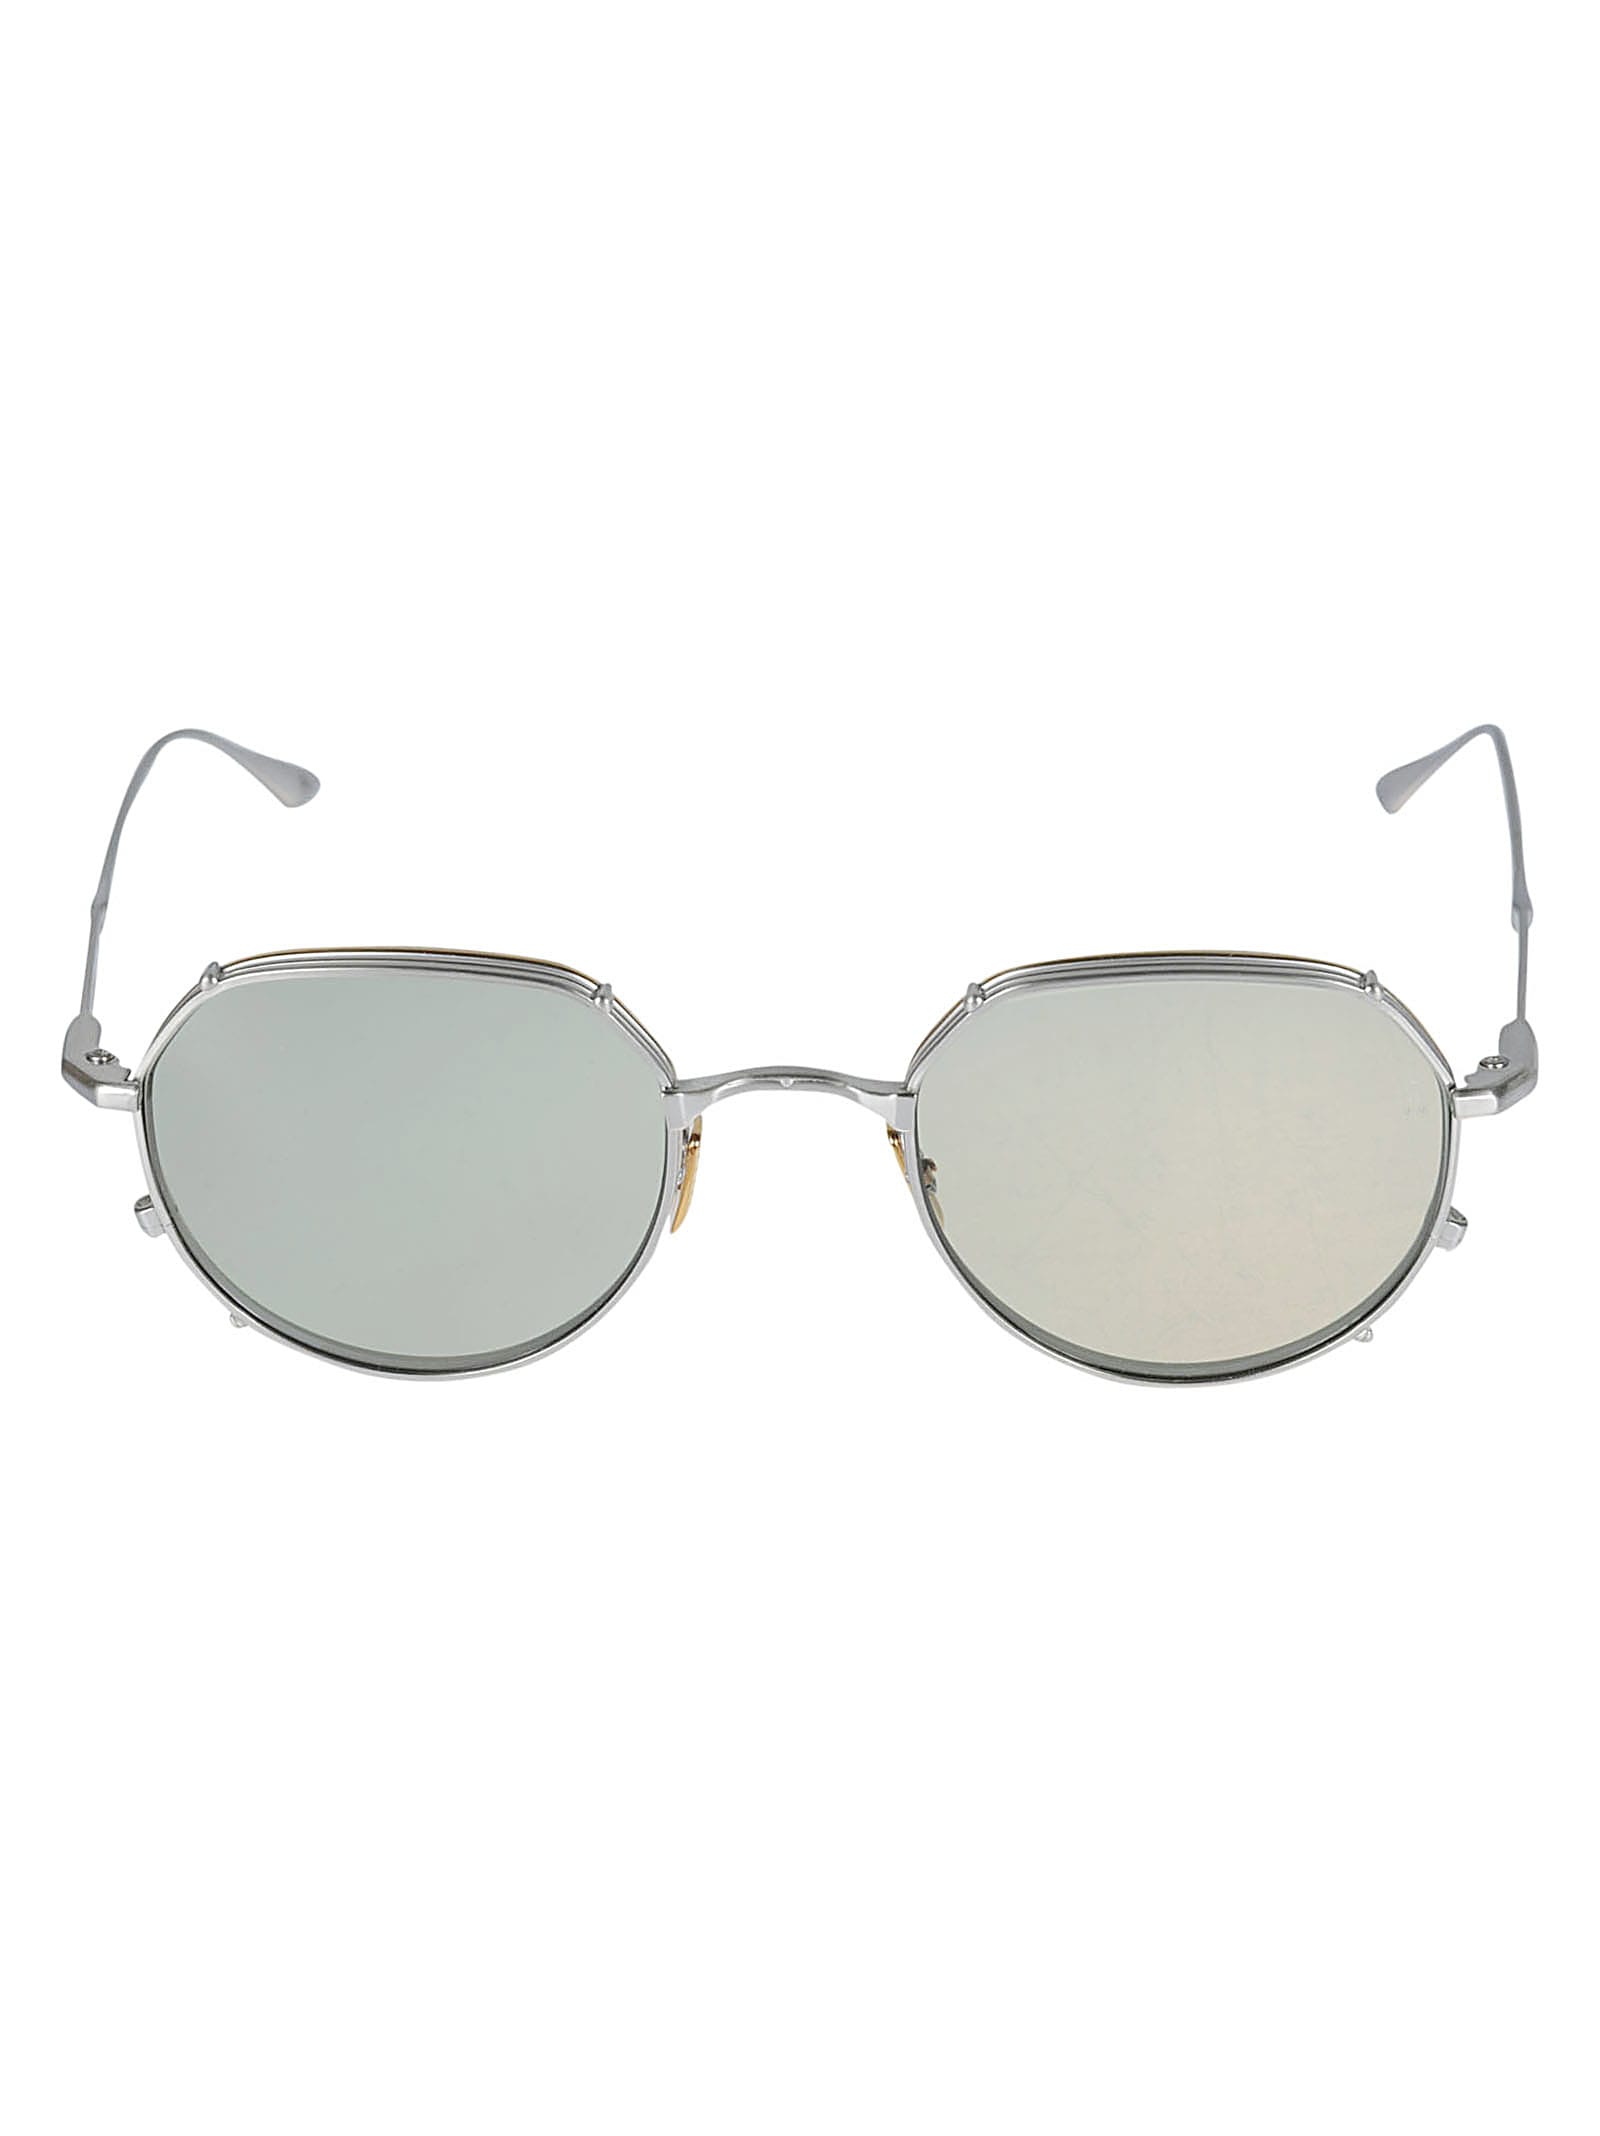 Jacques Marie Mage Semi-round Rim Sunglasses